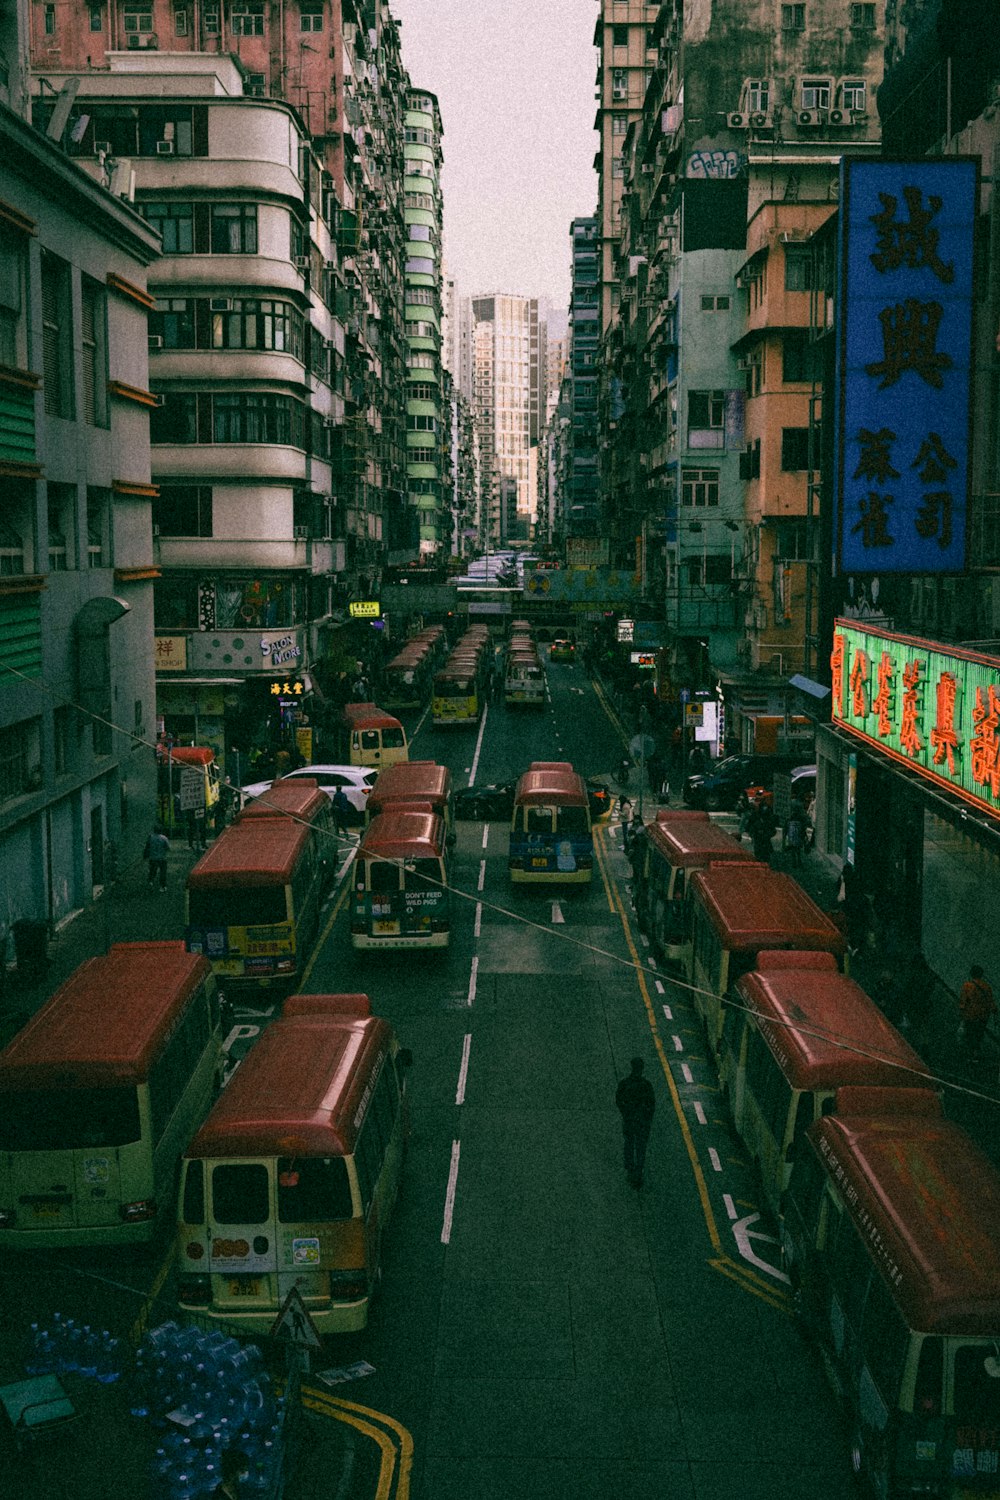 Une rue de la ville remplie de nombreux bus